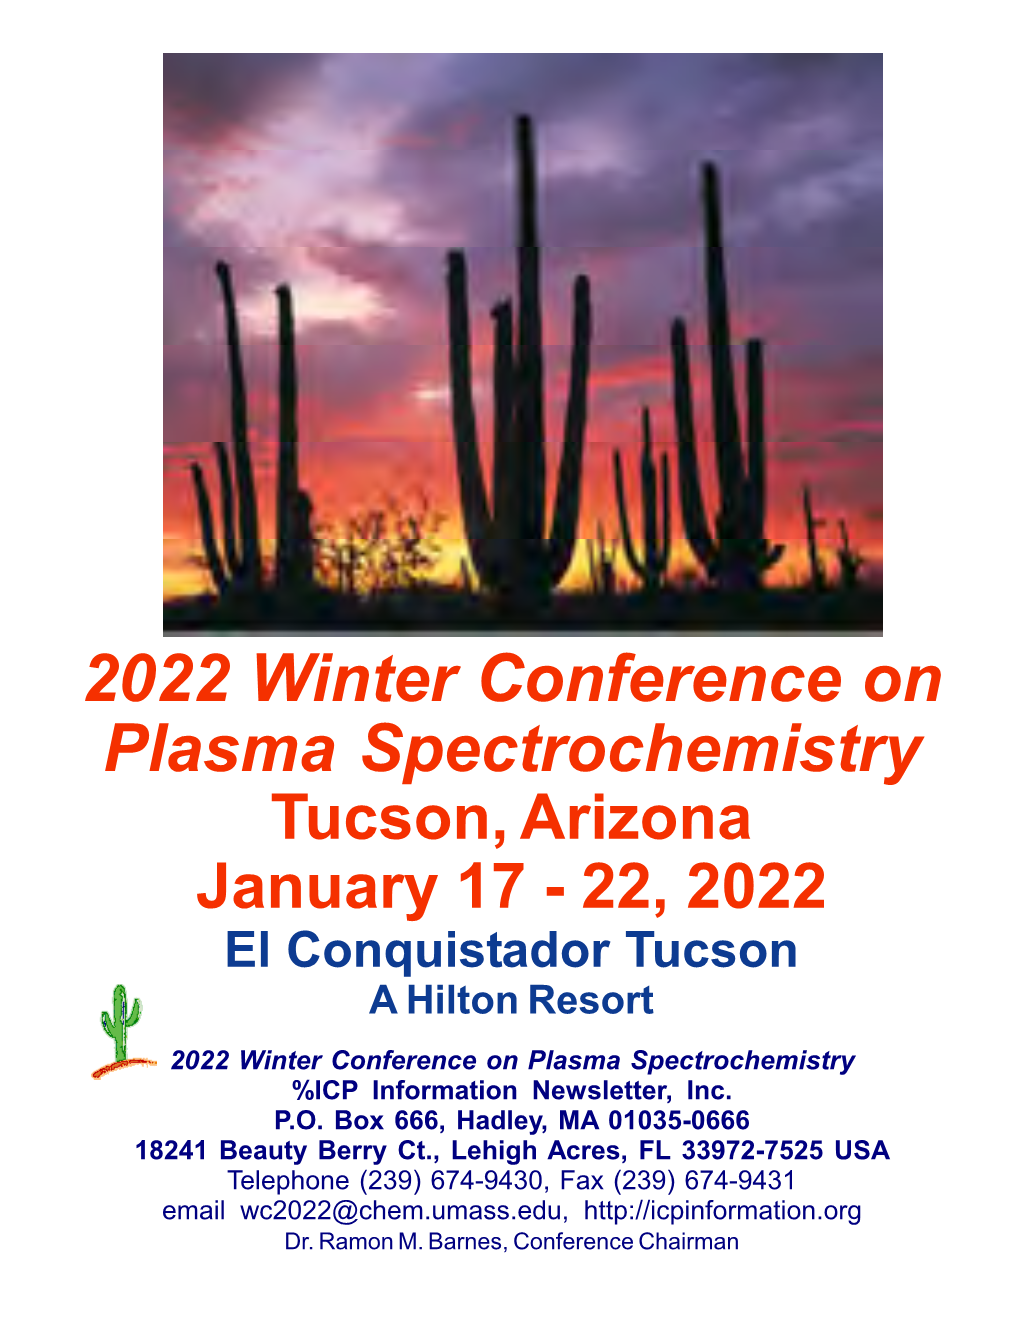 2022 Winter Conference on Plasma Spectrochemistry